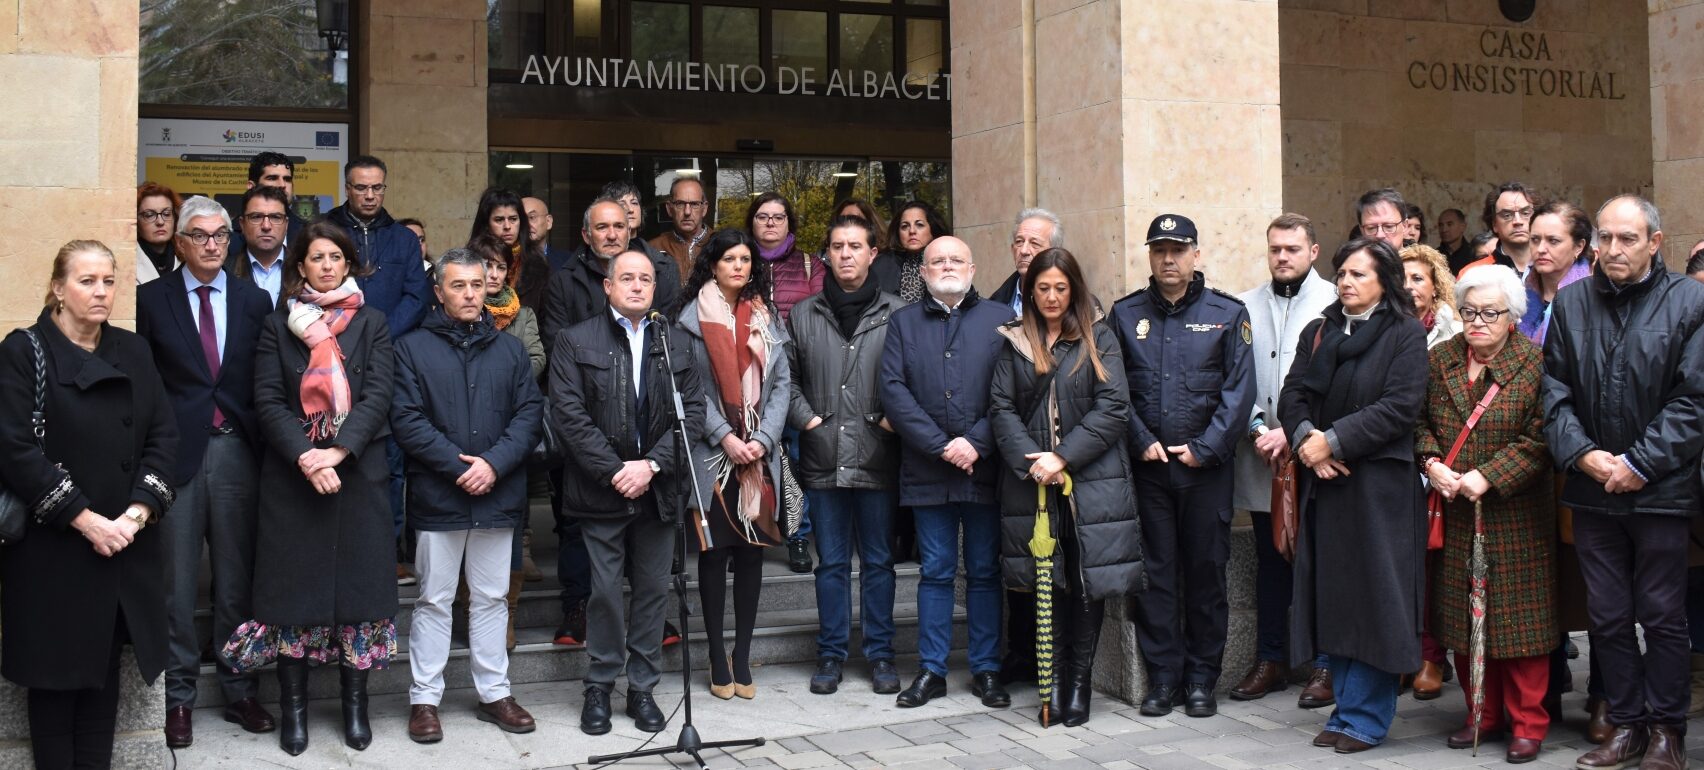 Albacete guarda cinco minutos de silencio en repulsa y condena por el asesinato machista de Ángela Cabañero.